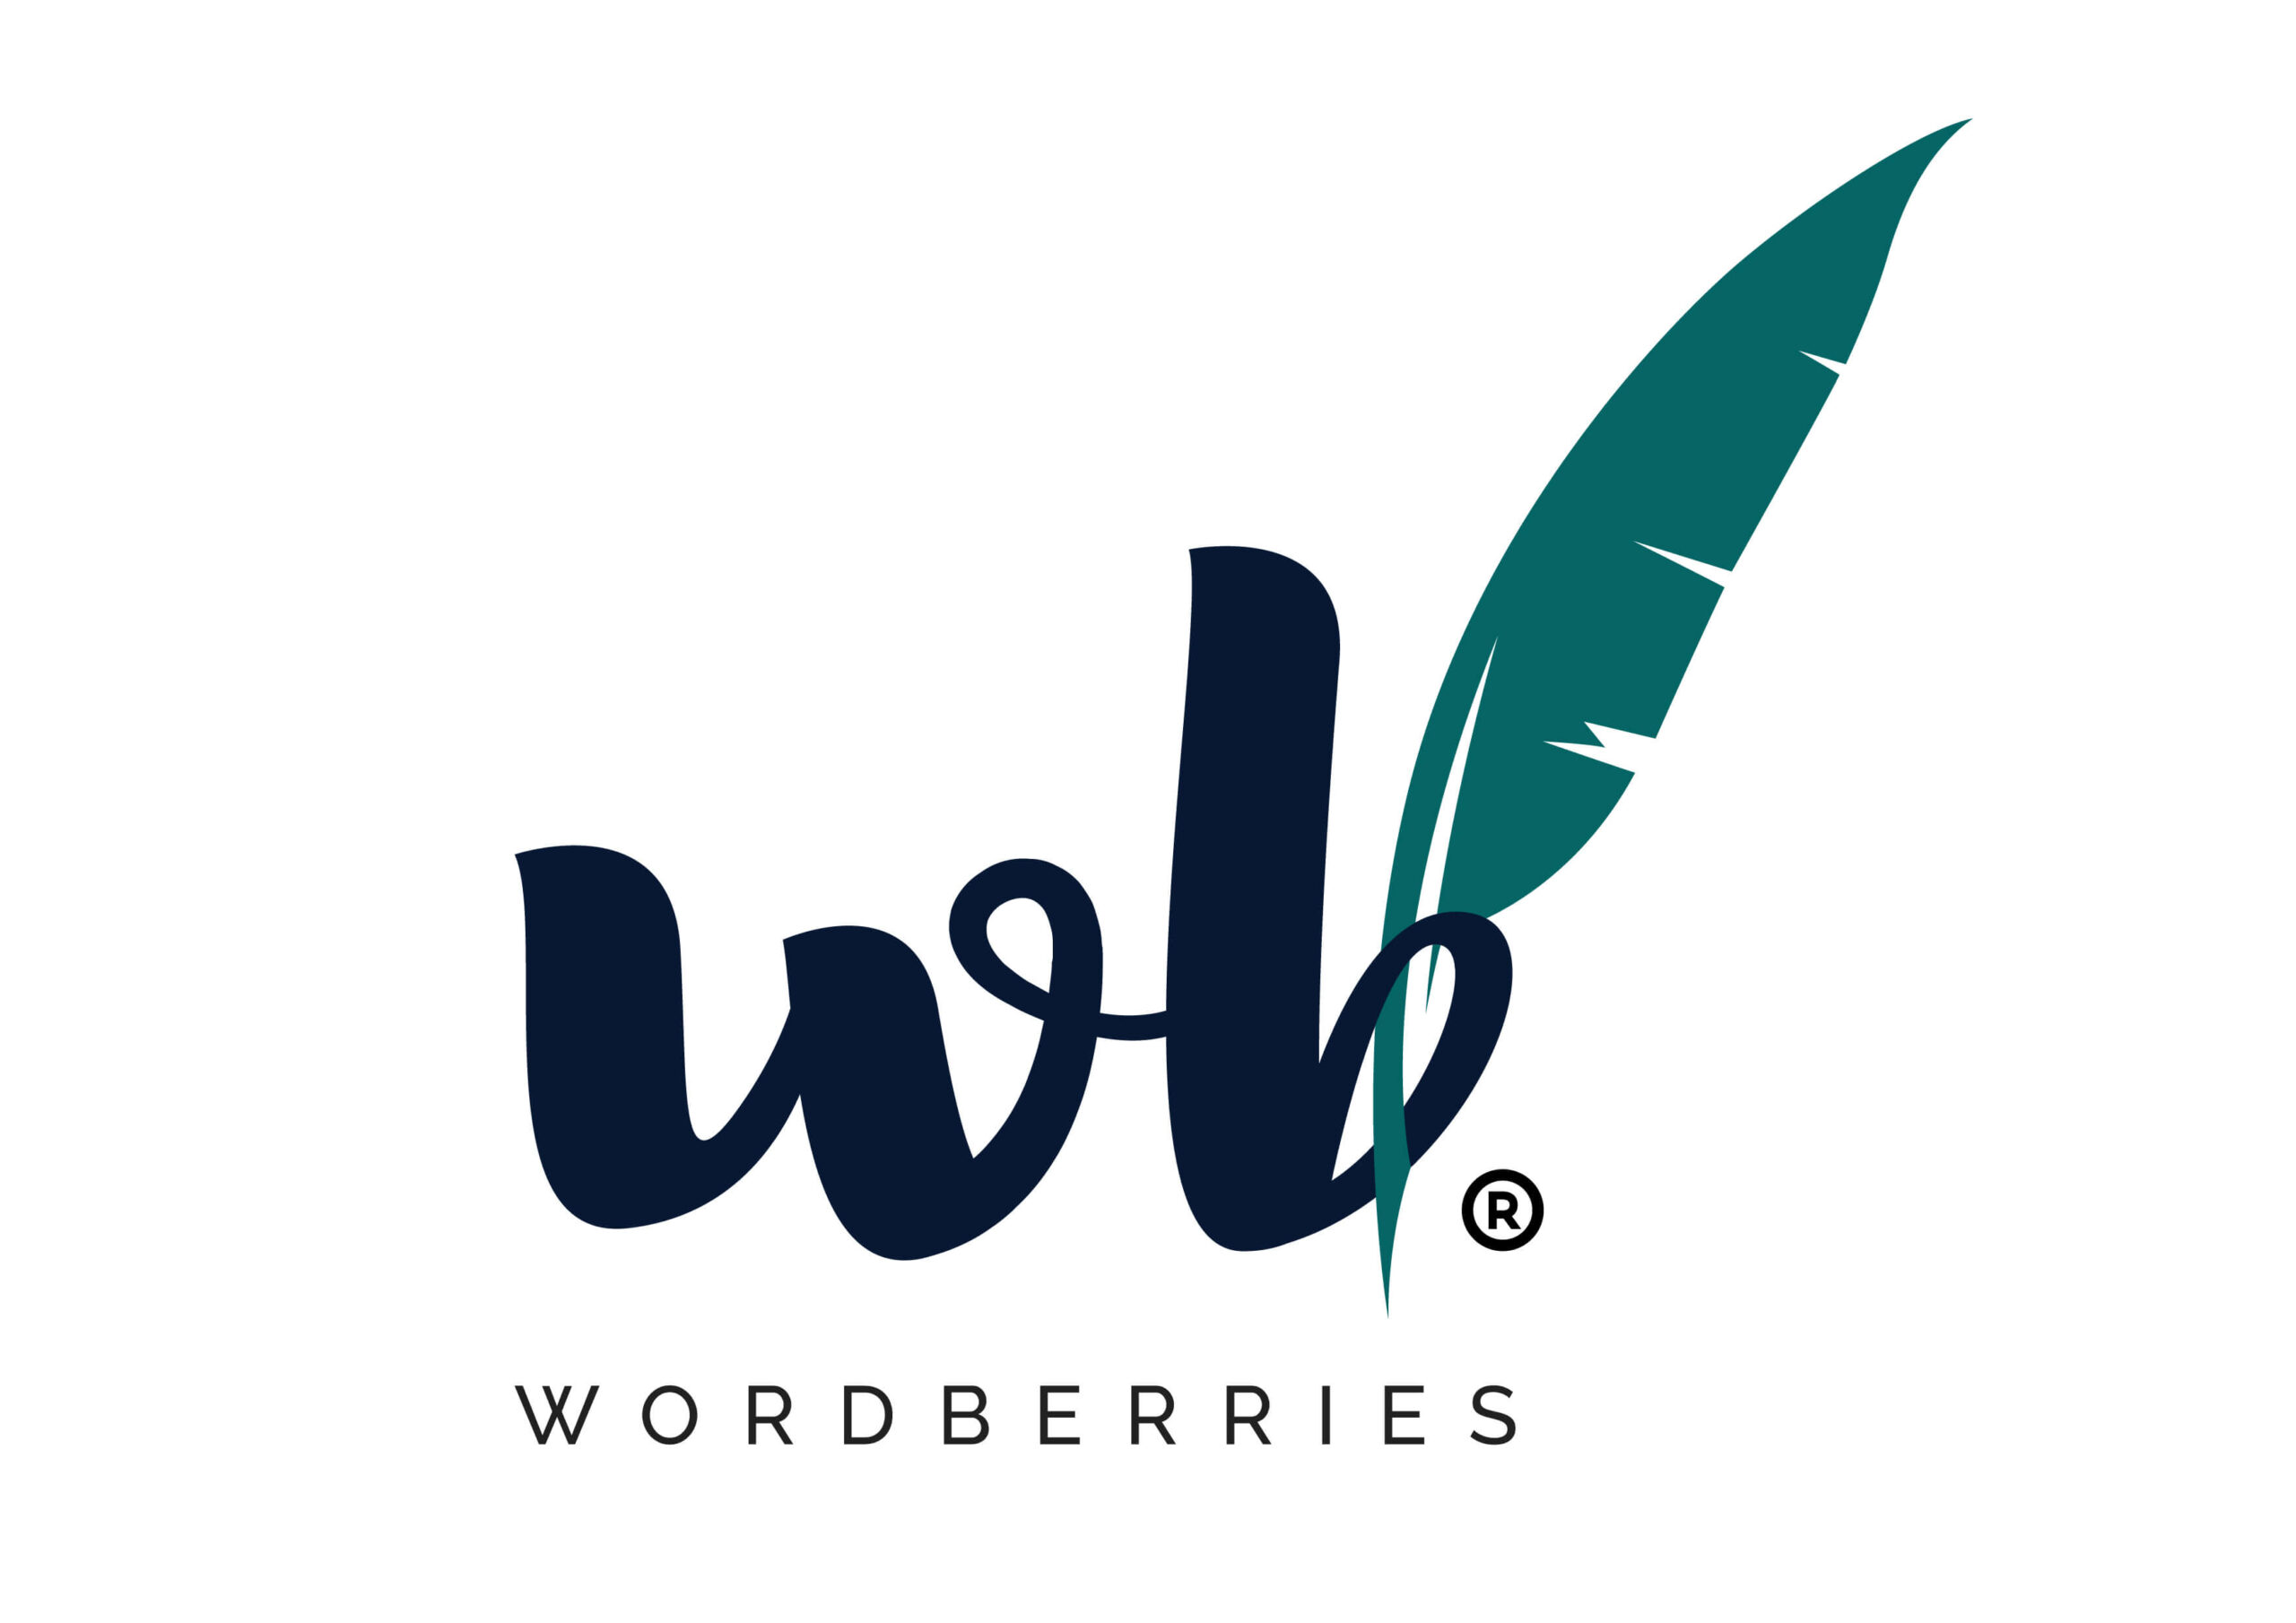 Wordberries